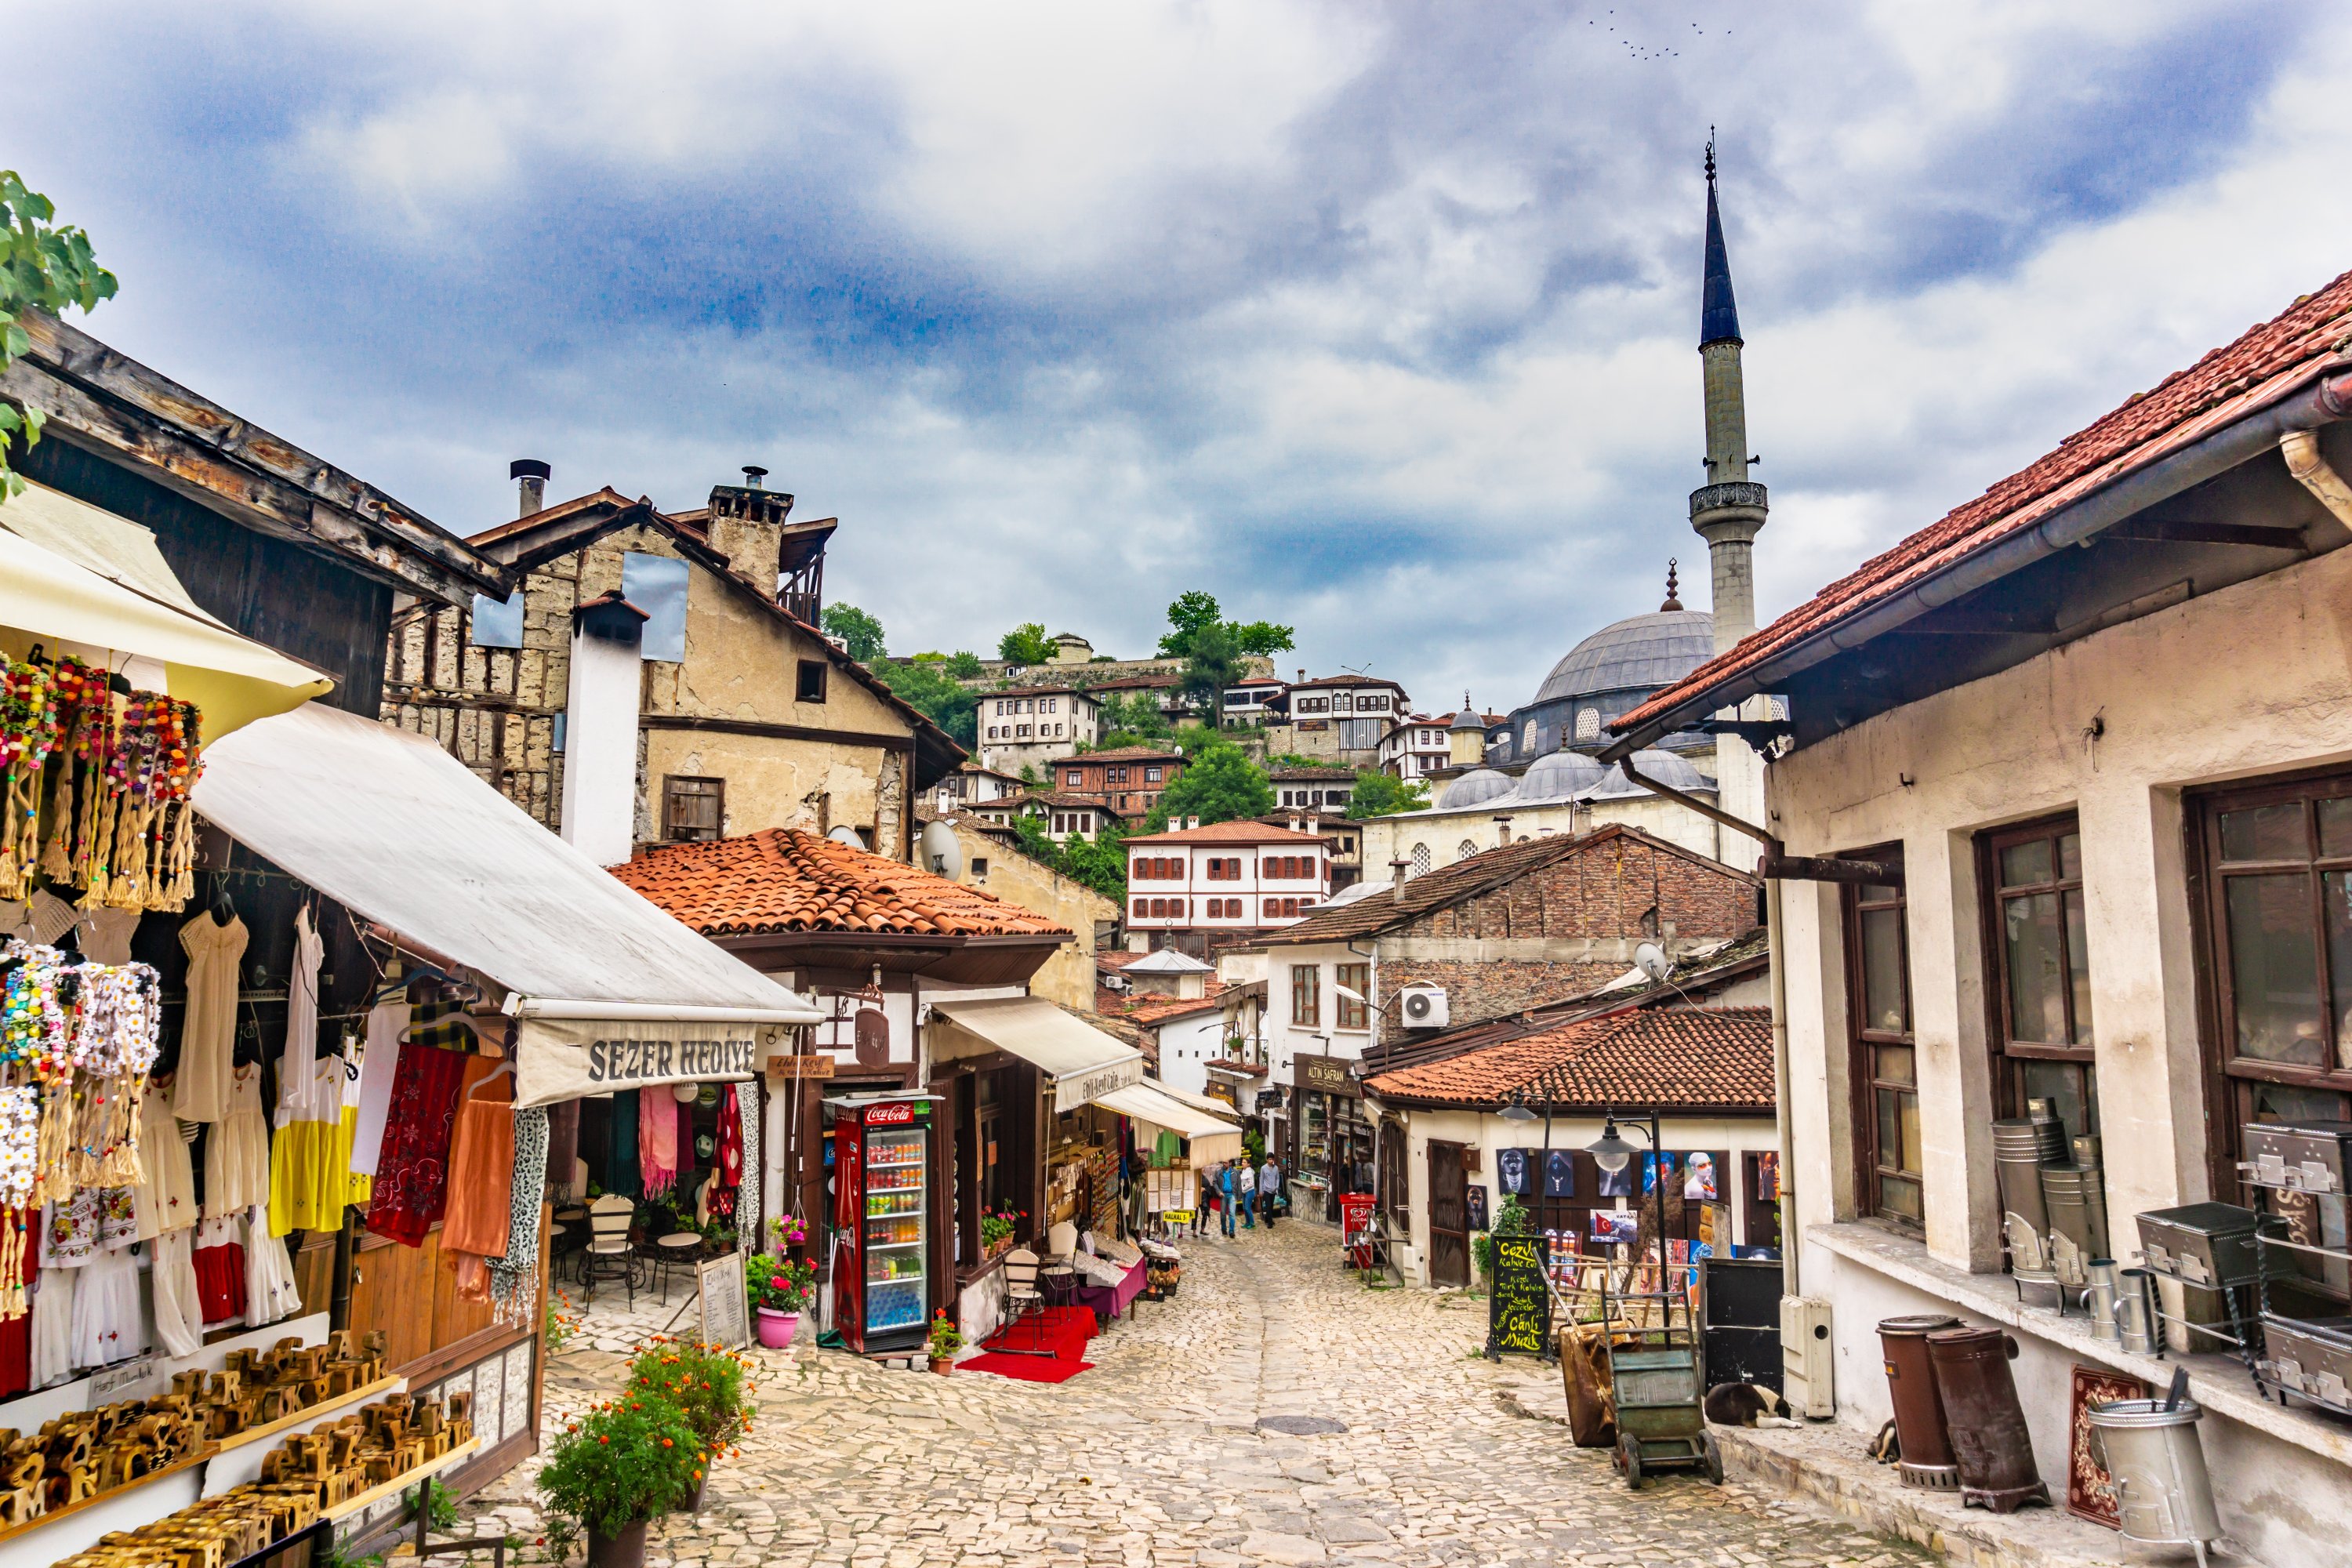 Rumah tradisional Turki dan jalan batu sempit Safranbolu, Karabük, Türkiye, 15 Juli 2019. (Foto Shutterstock)